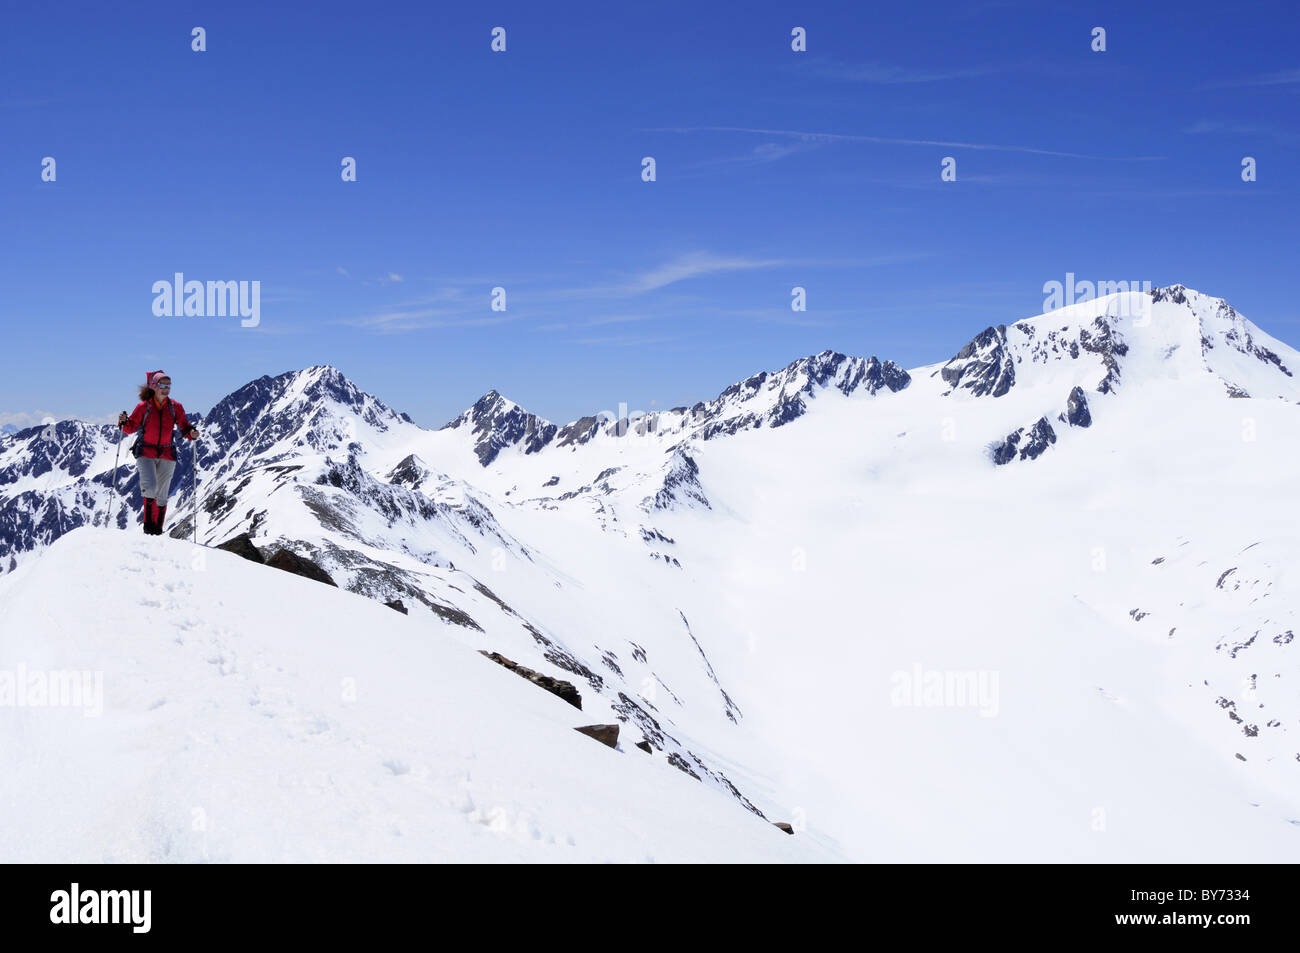 Woman ascending mountain Im Hinteren Eis, Weisskugel in background, Schnals valley, Oetztal Alps, Vinschgau, Trentino-Alto Adige Stock Photo